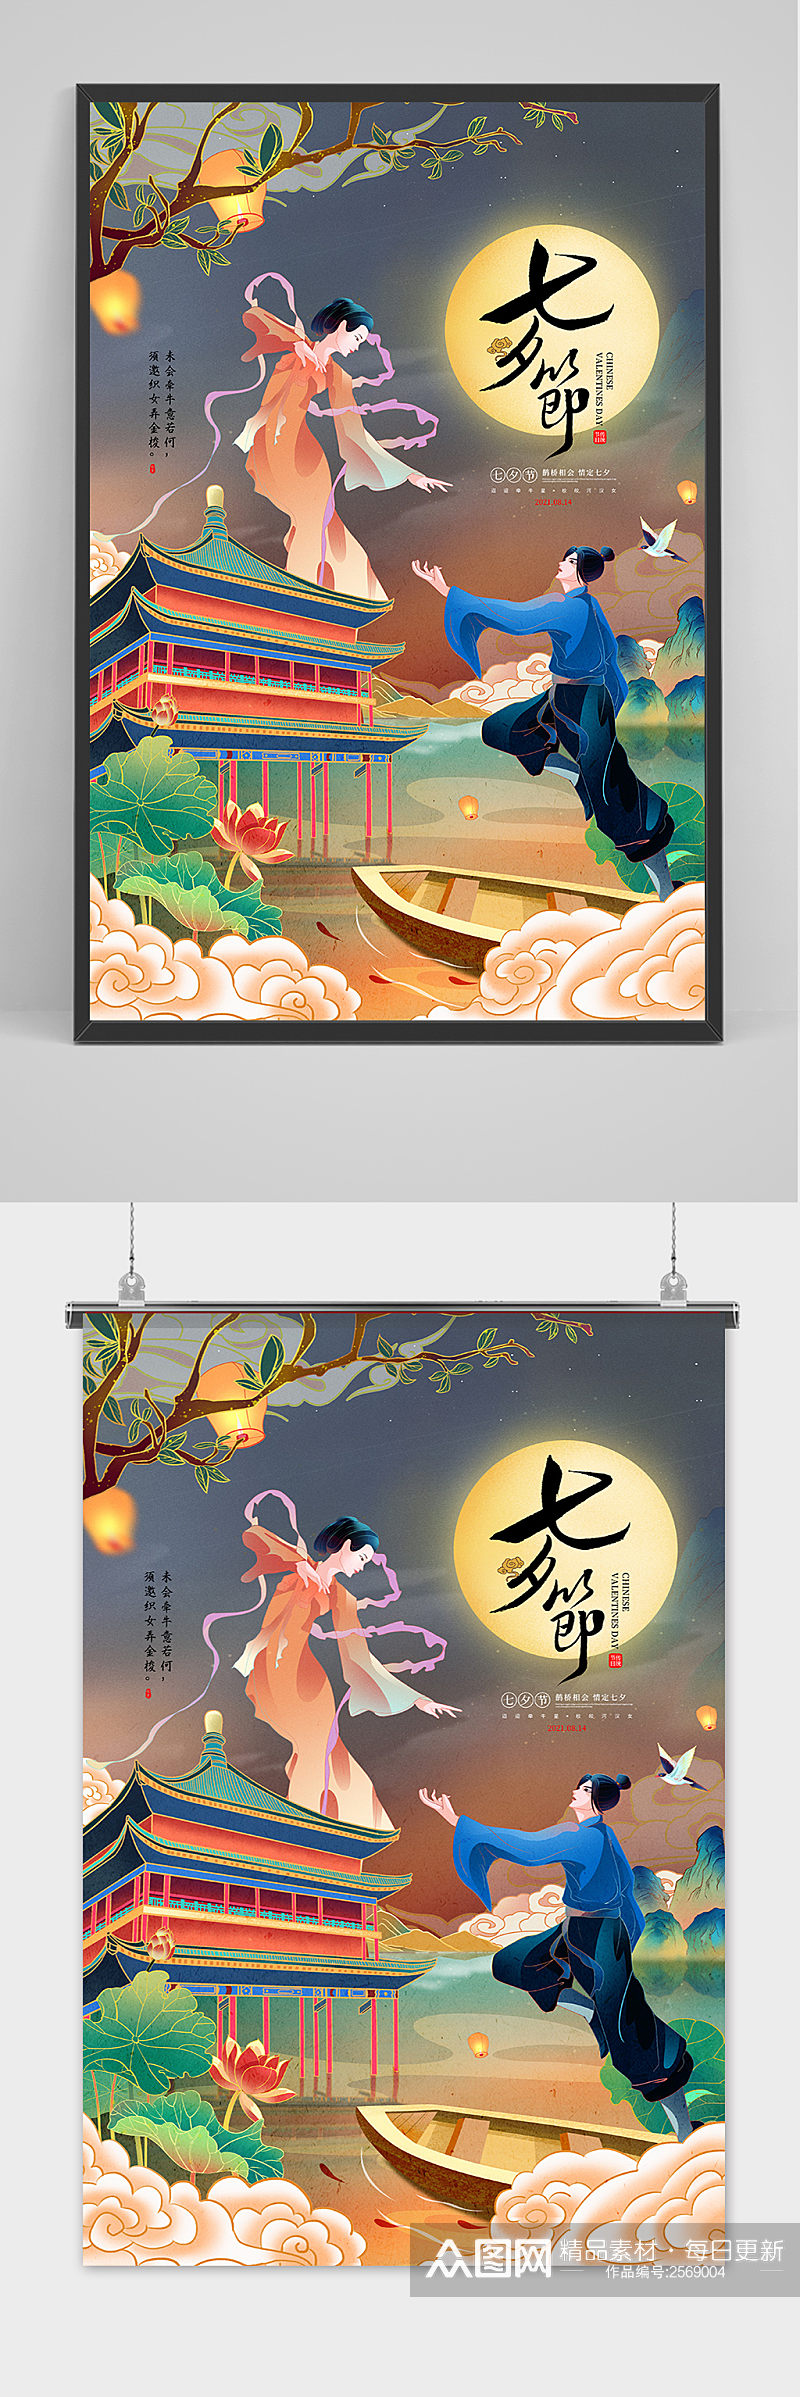 手绘中国传统节日七夕节插画海报素材